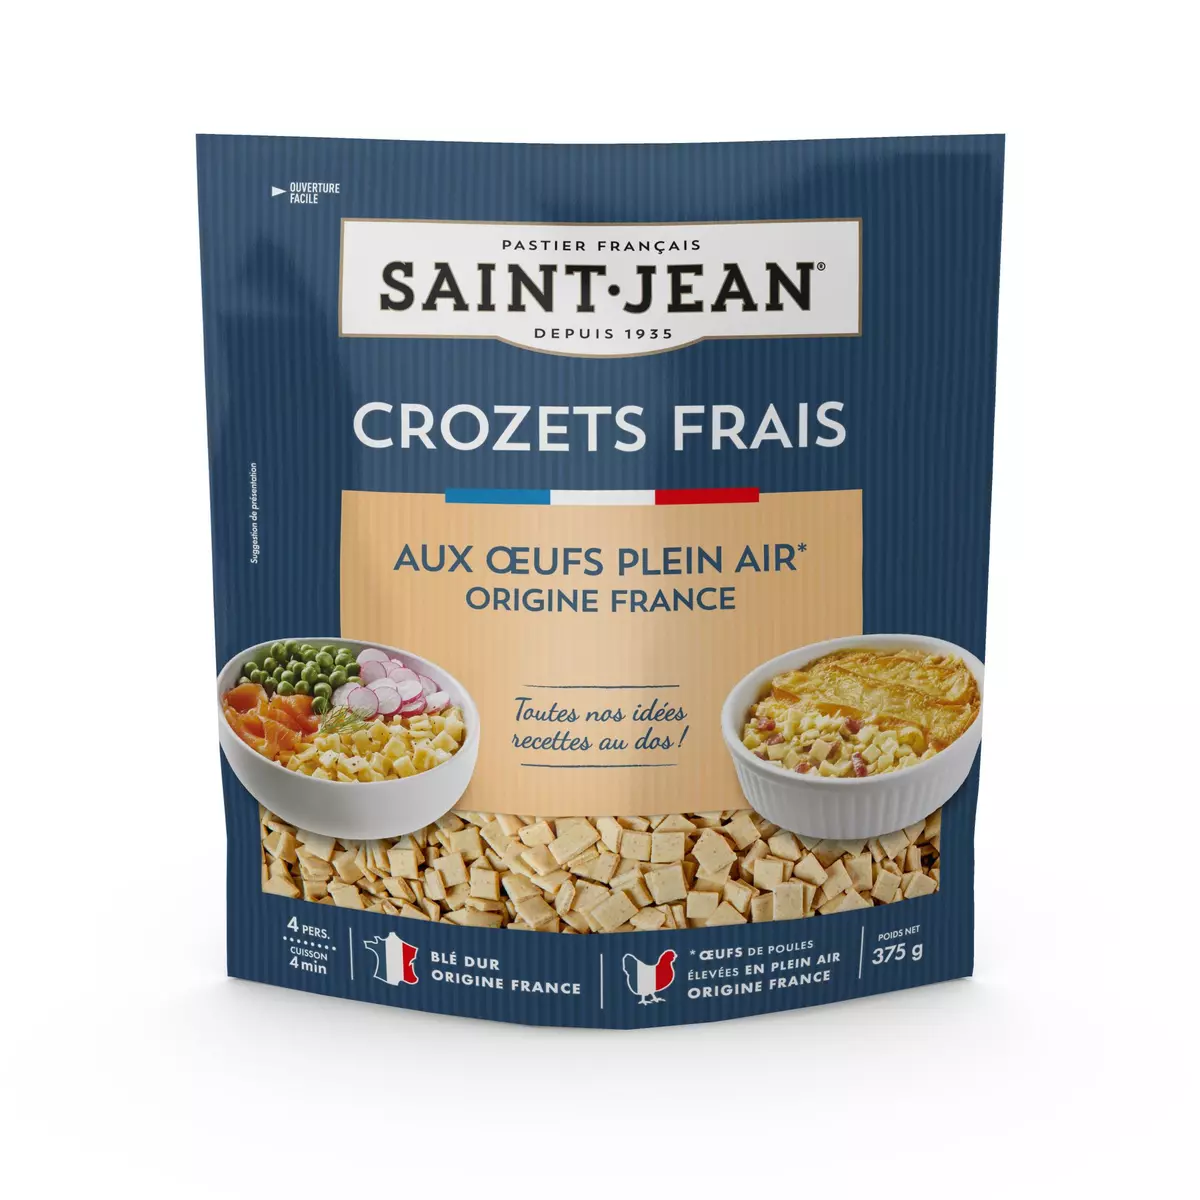 SAINT JEAN Crozets frais 4 portions 375g